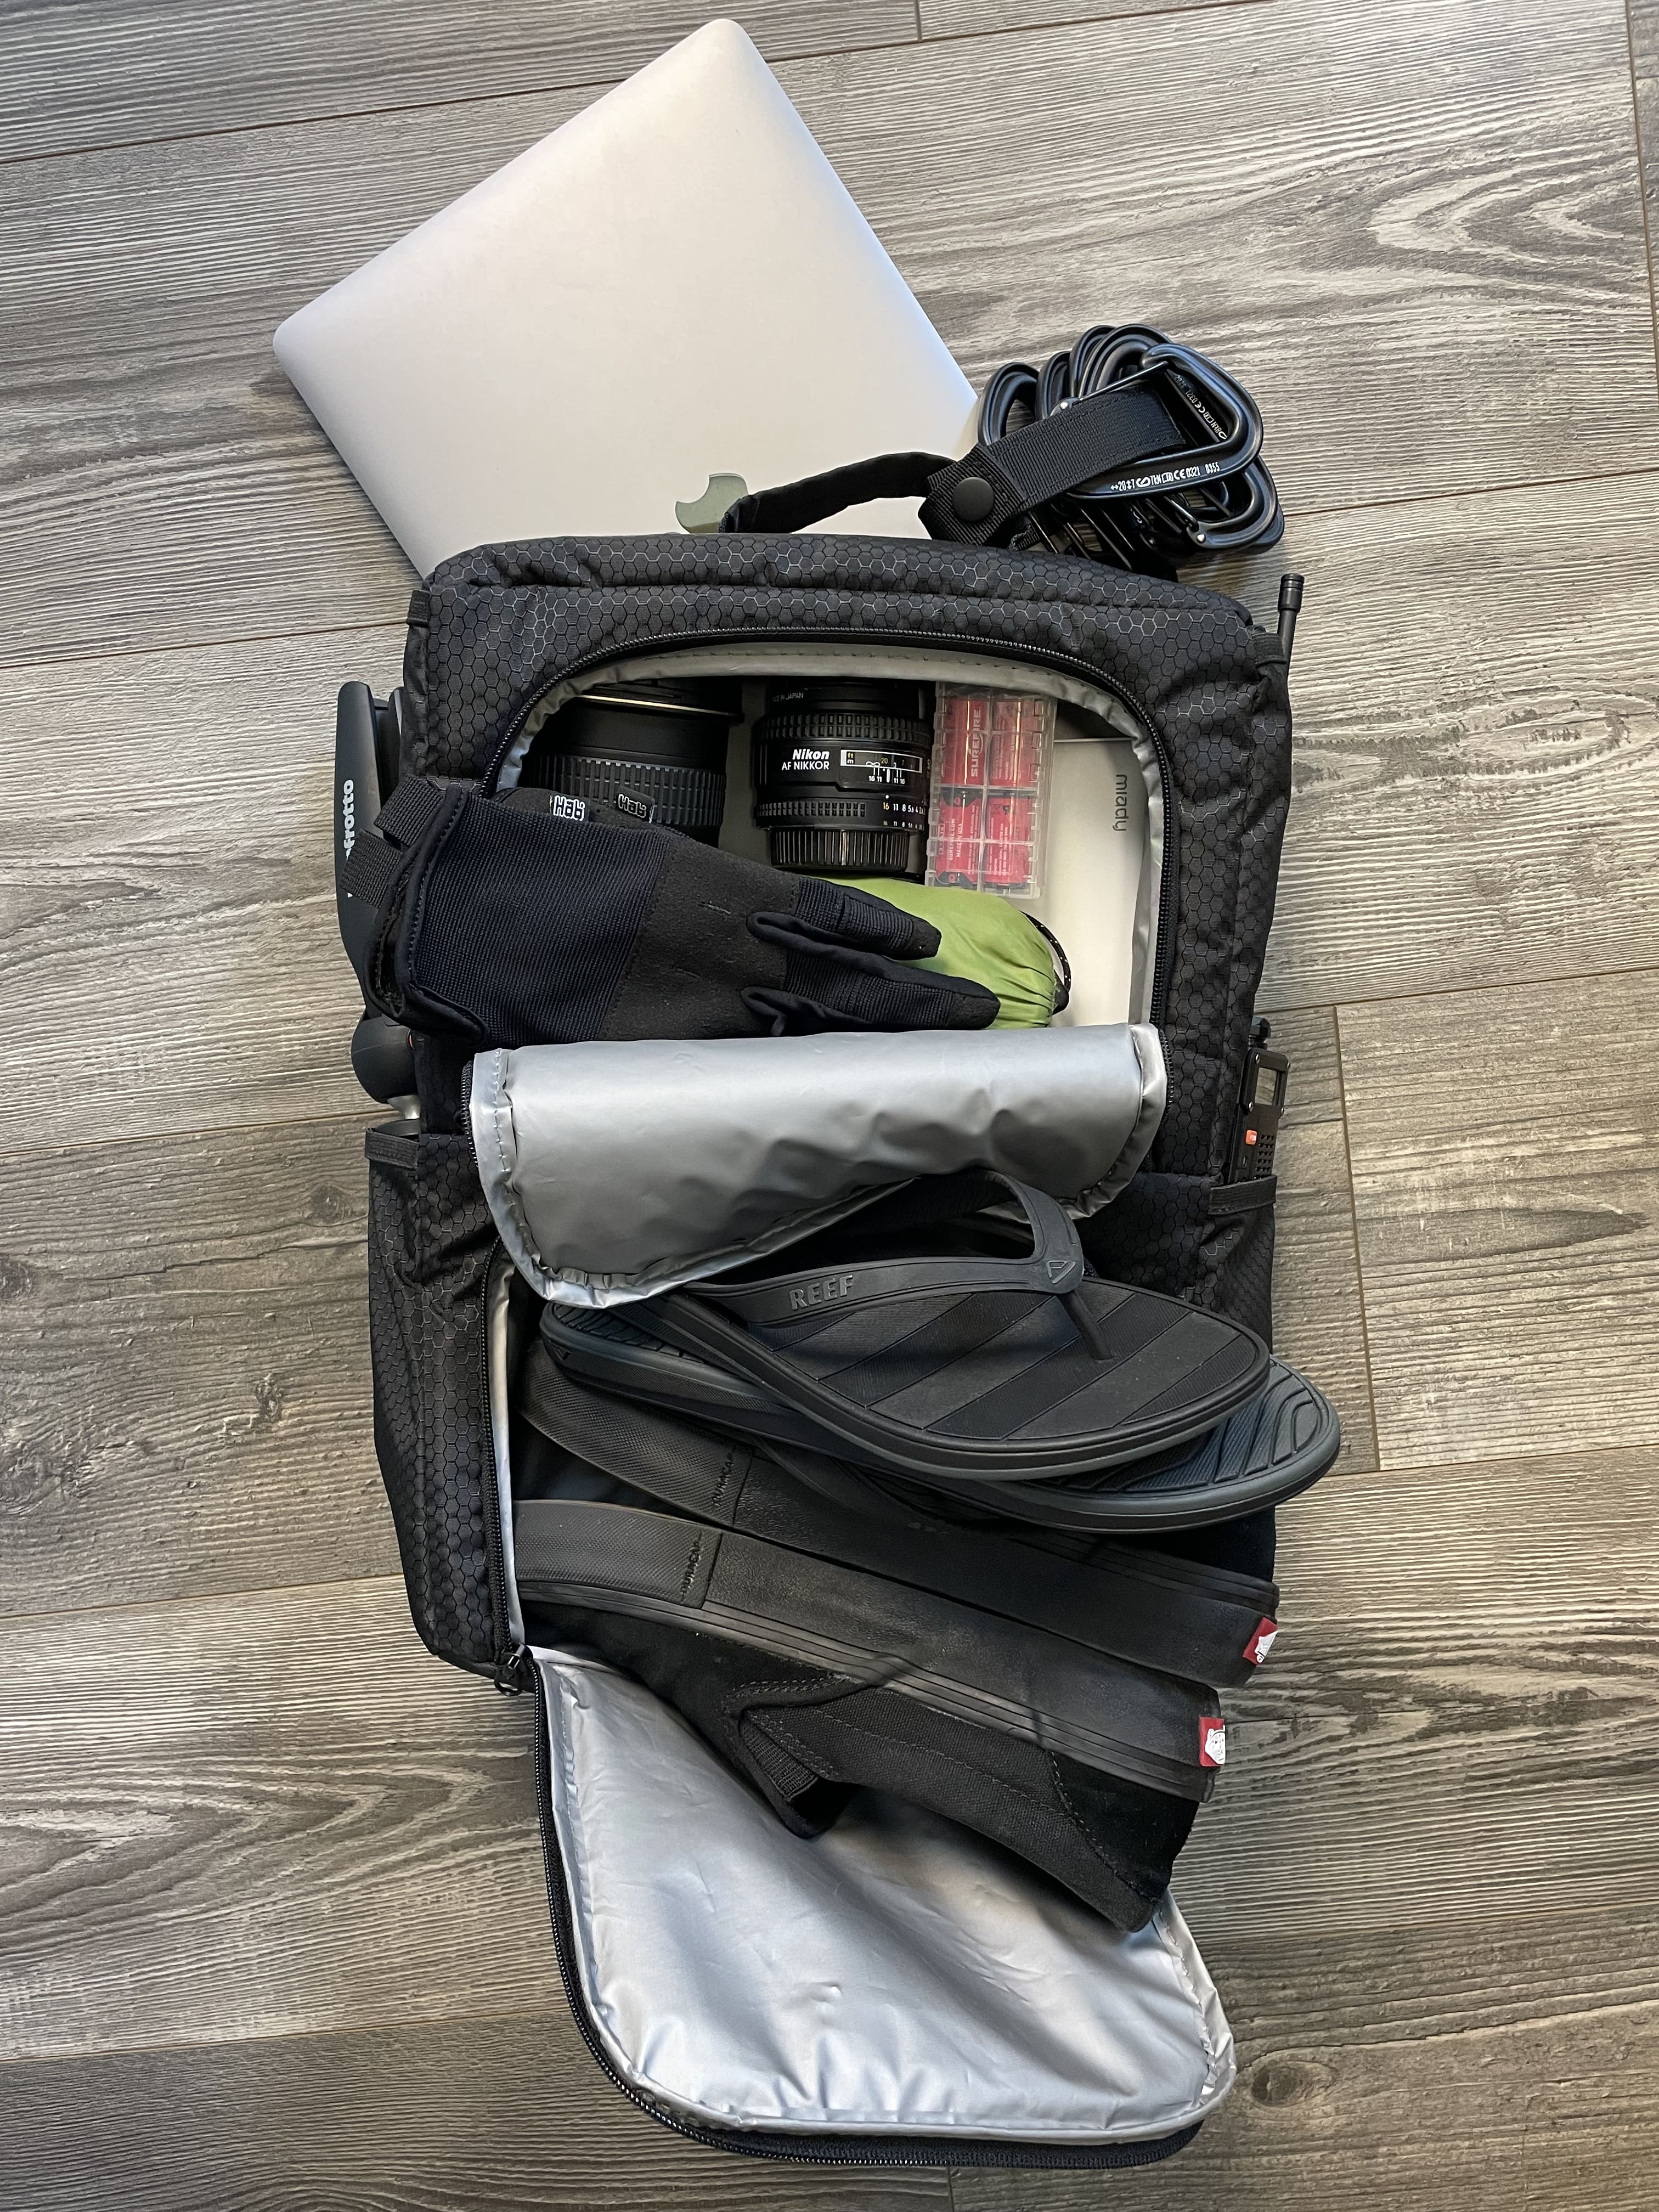 
  
  365 Backpack_Locker Insert by [Hab Gear]
  
